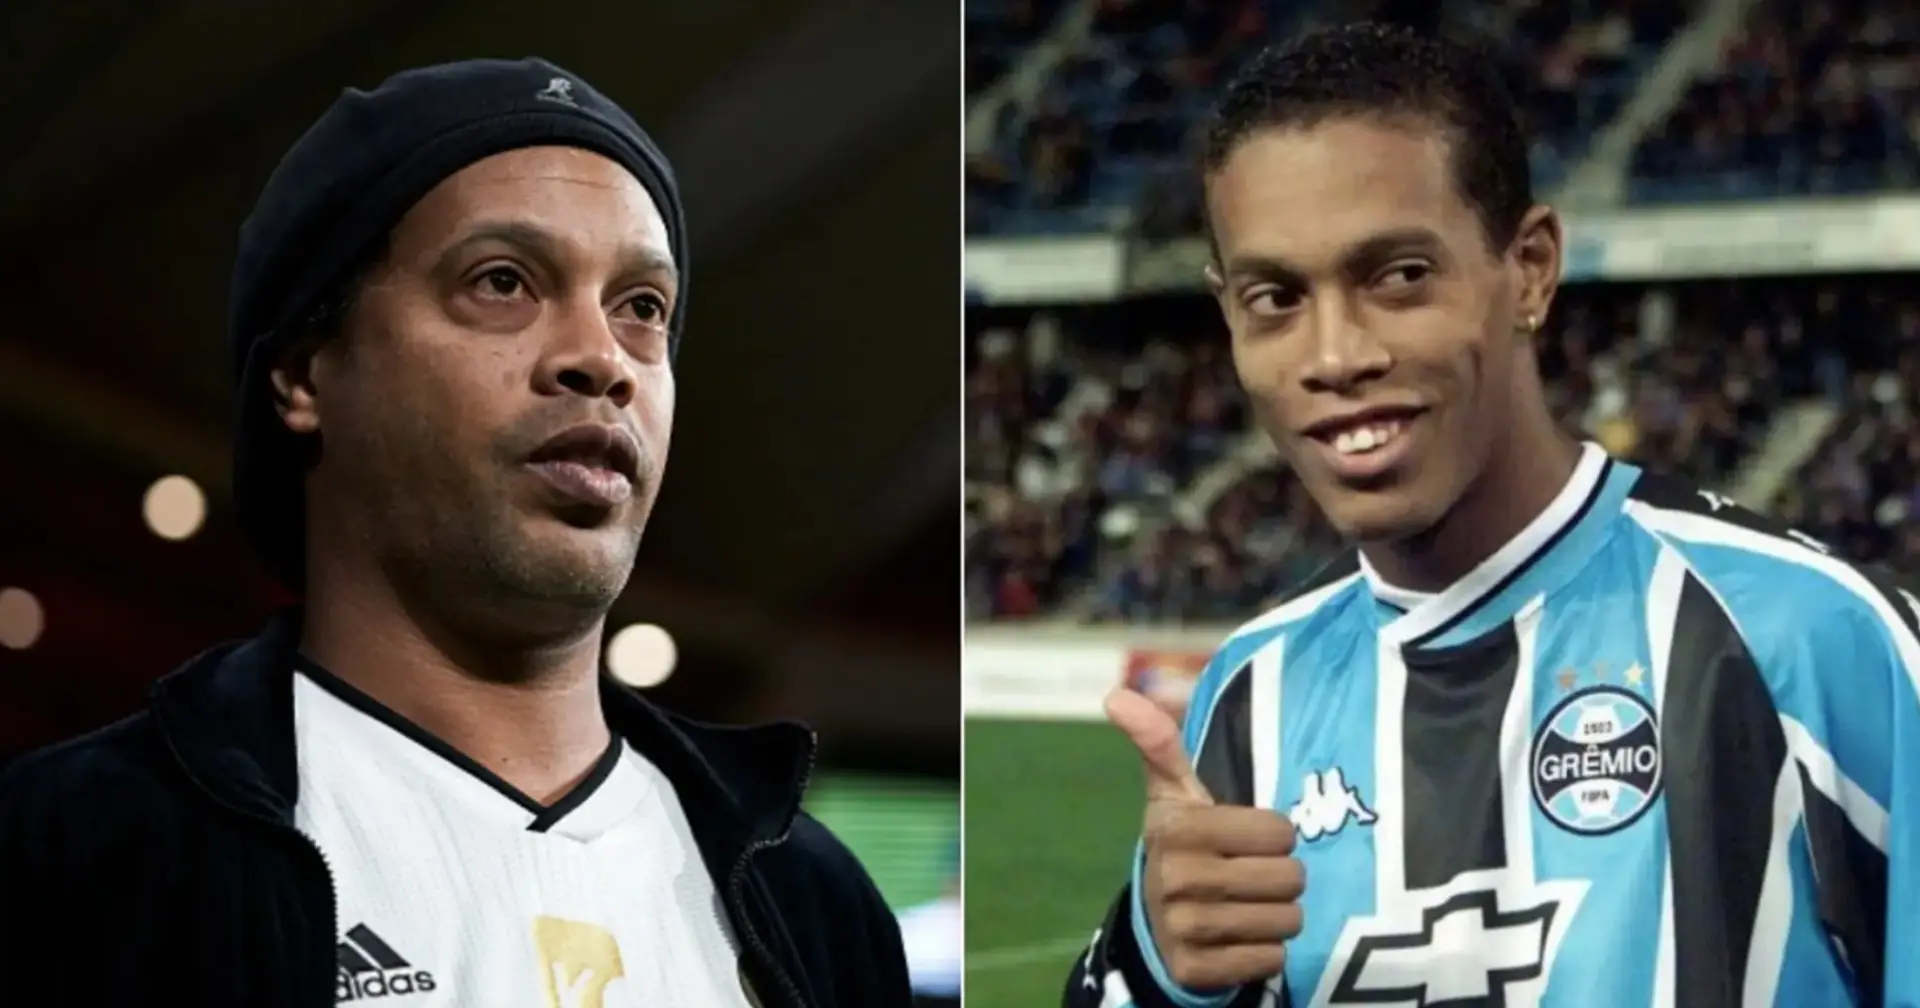 Die dunkle Seite der Magie: Die Fans von Gremio hassen Ronaldinho - du wirst sie verstehen, wenn du herausfindest, was er getan hat 